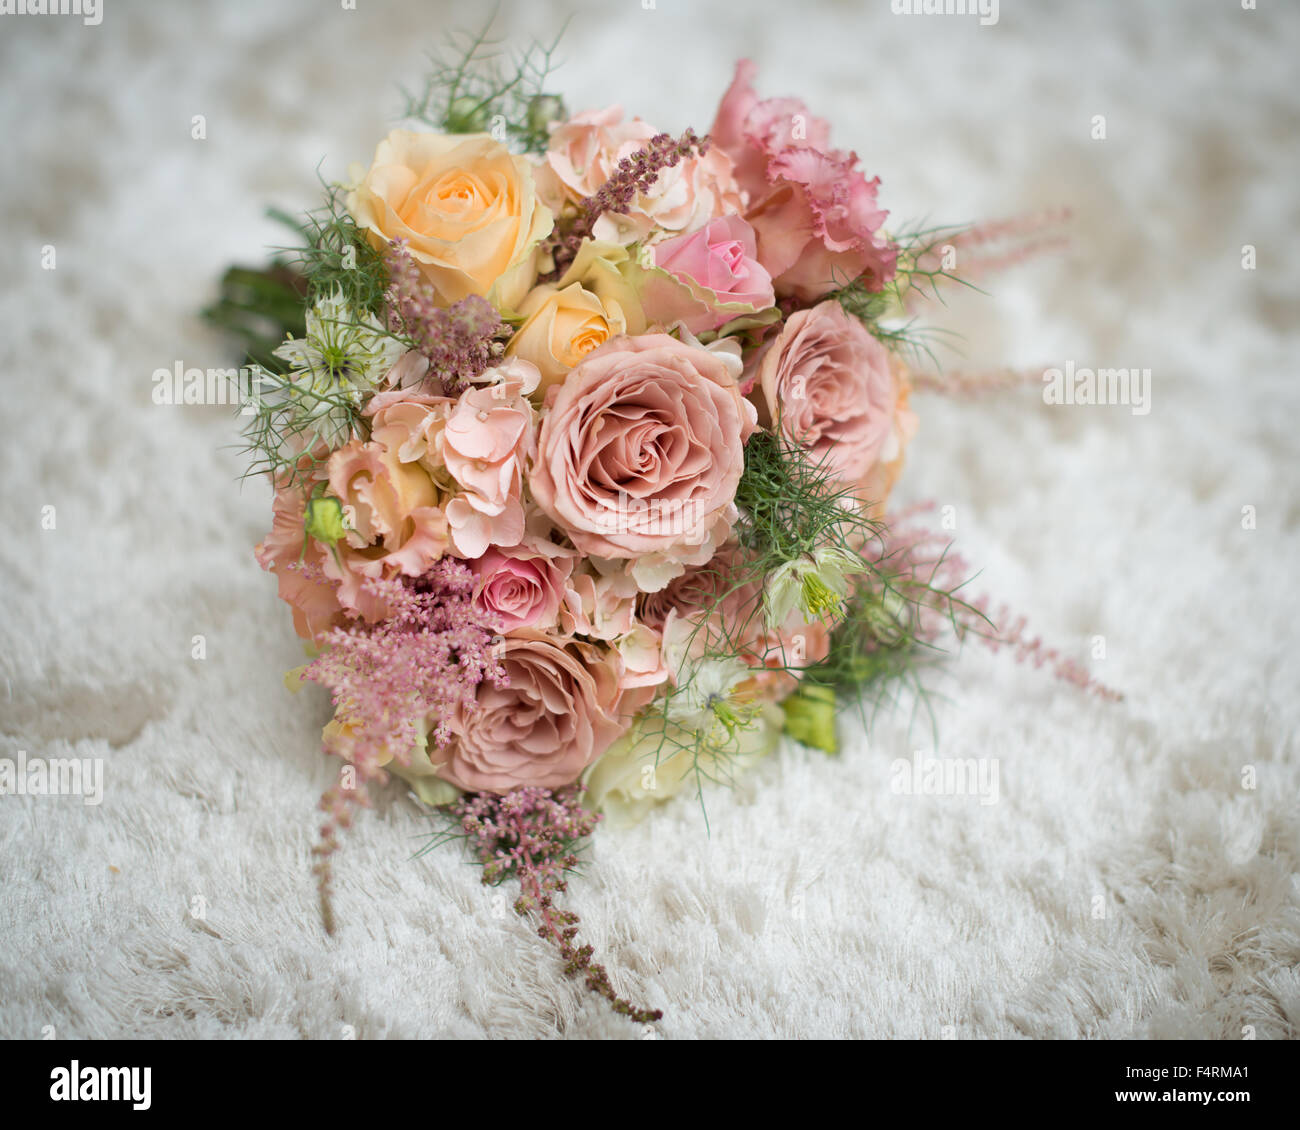 Bouquet nozze fiori rosa pesca e giallo limone con fogliame verde bellissimo matrimonio di fiori per la sposa o damigella Foto Stock